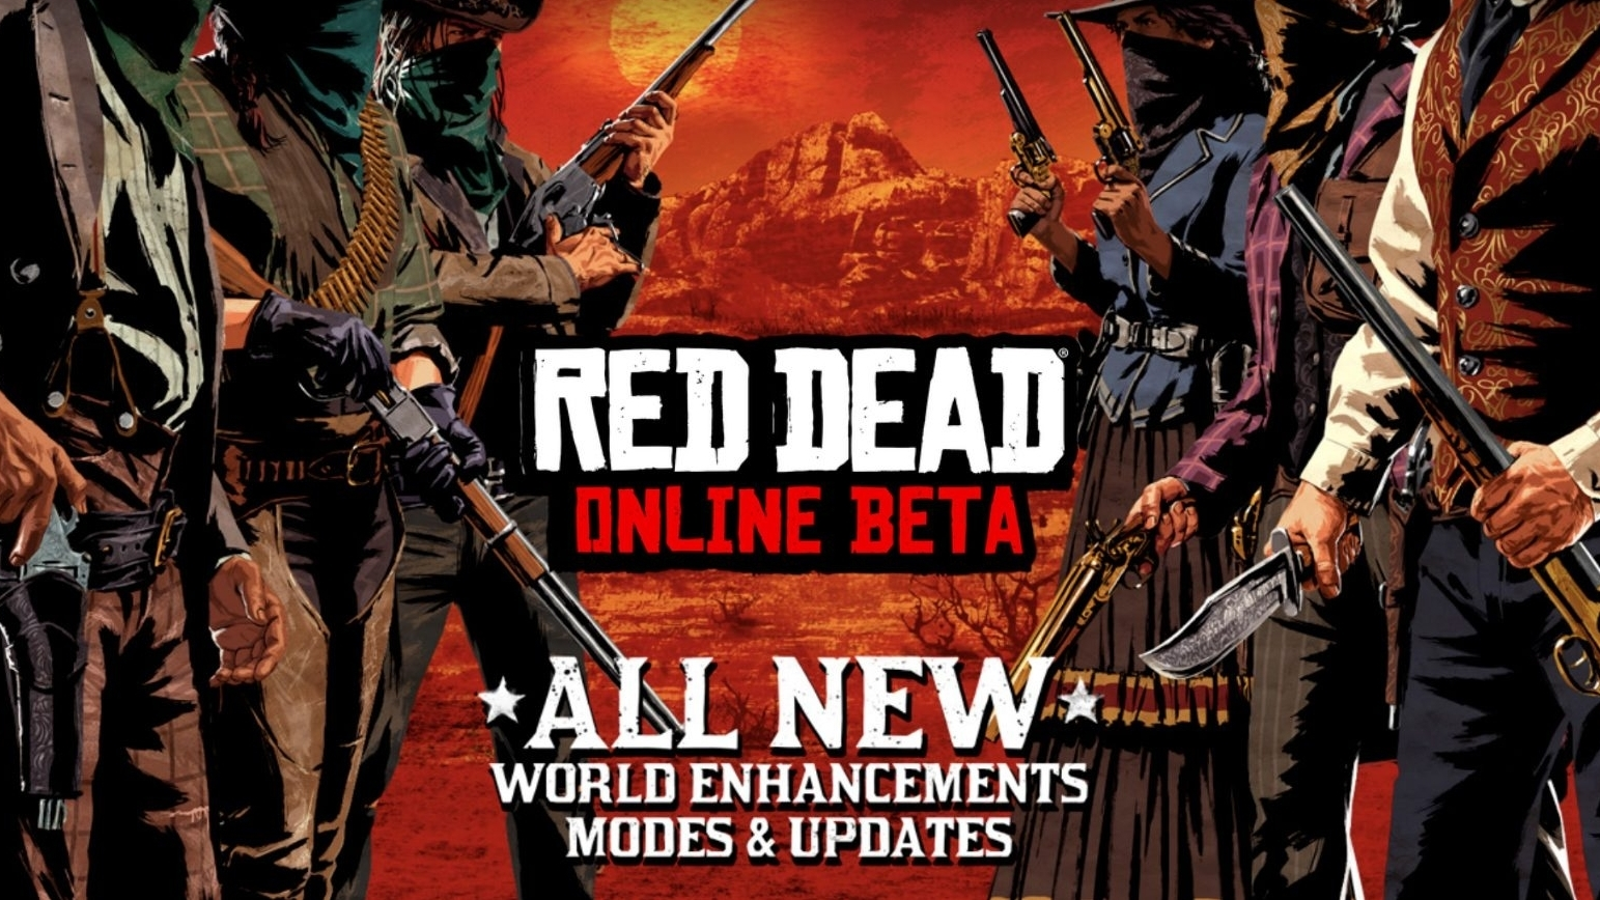 Is Red Dead Online Dead?